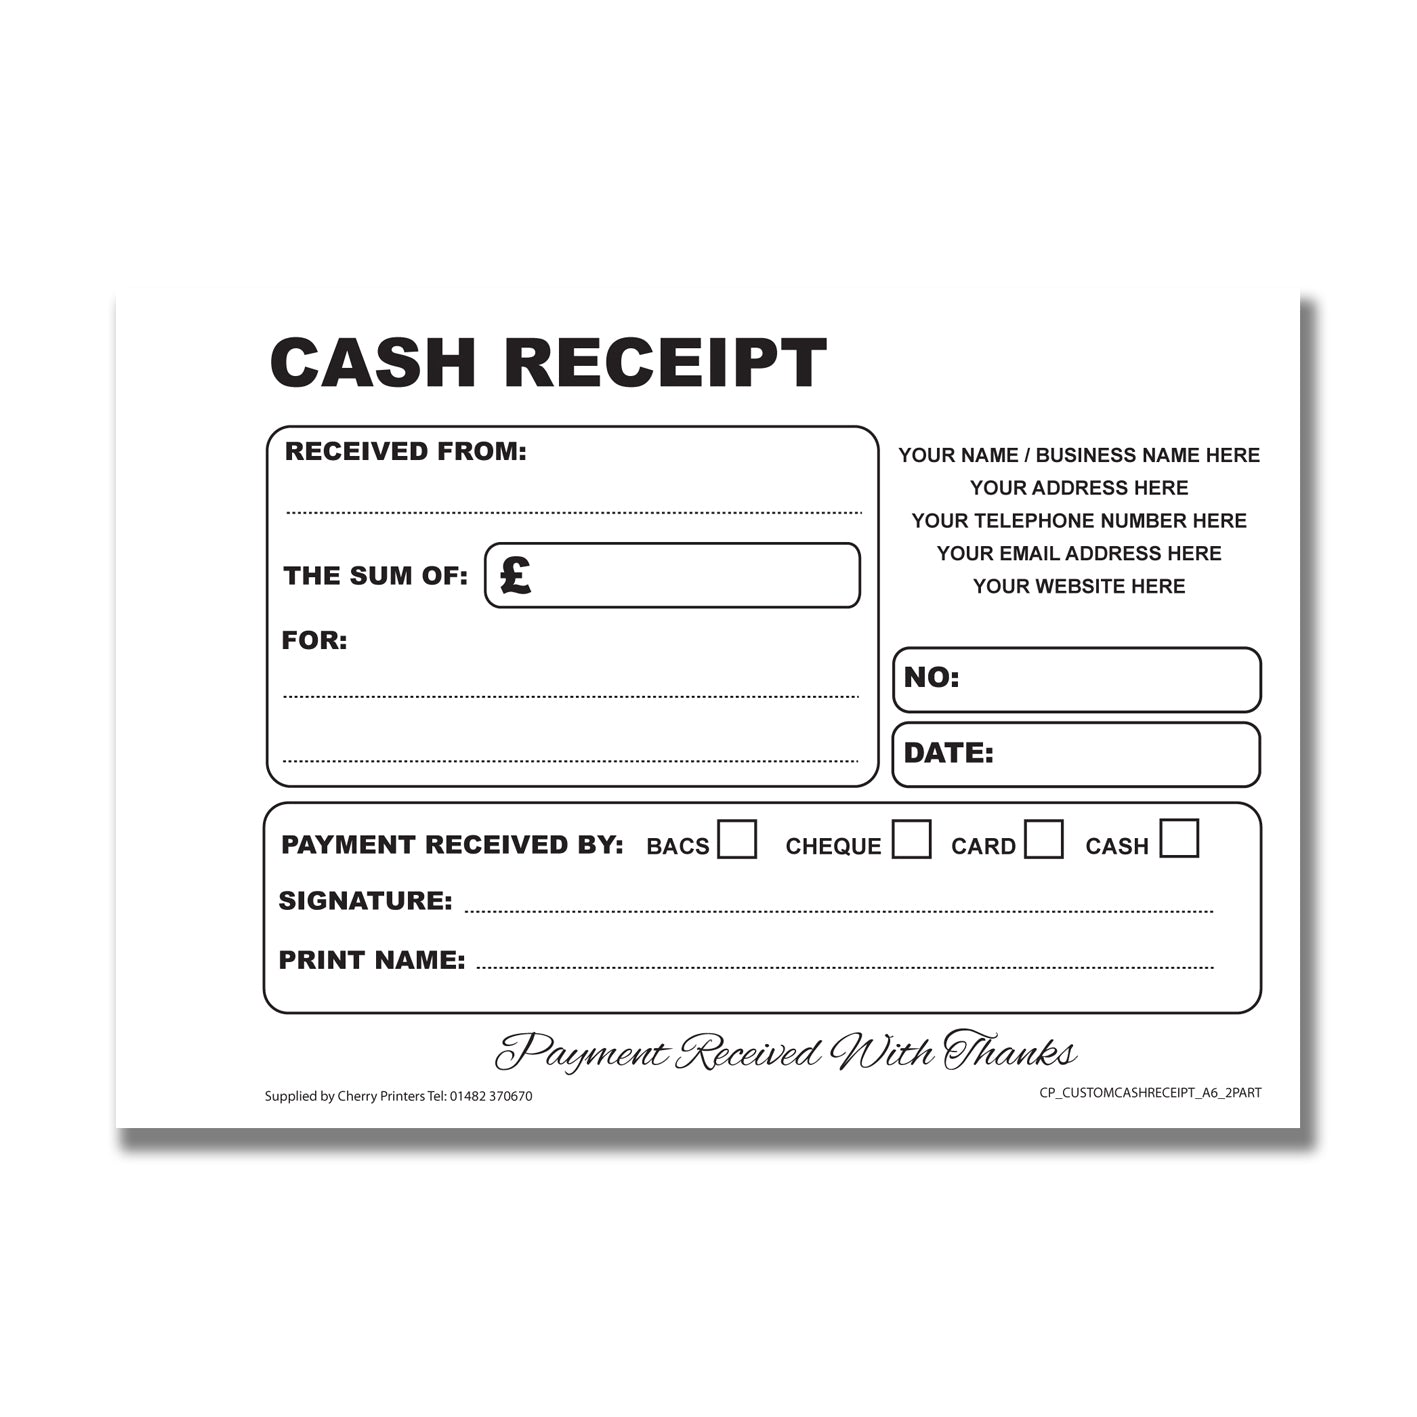 NCR *CUSTOM* Cash Receipt Duplicate Book A6 | 8 Book Pack